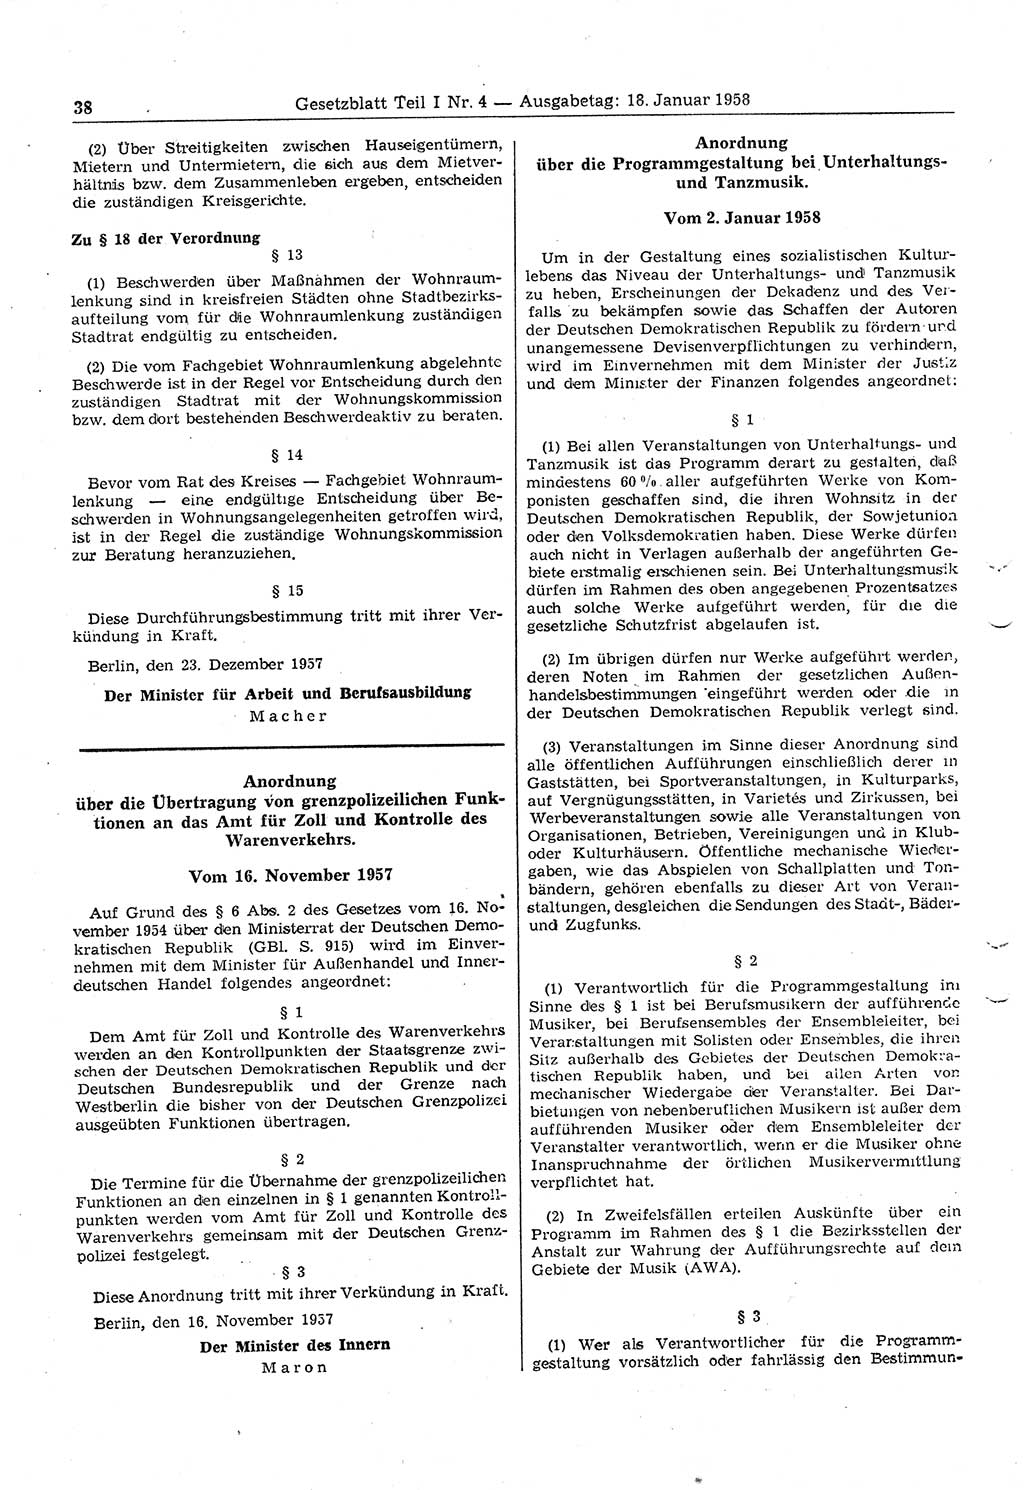 Gesetzblatt (GBl.) der Deutschen Demokratischen Republik (DDR) Teil Ⅰ 1958, Seite 38 (GBl. DDR Ⅰ 1958, S. 38)